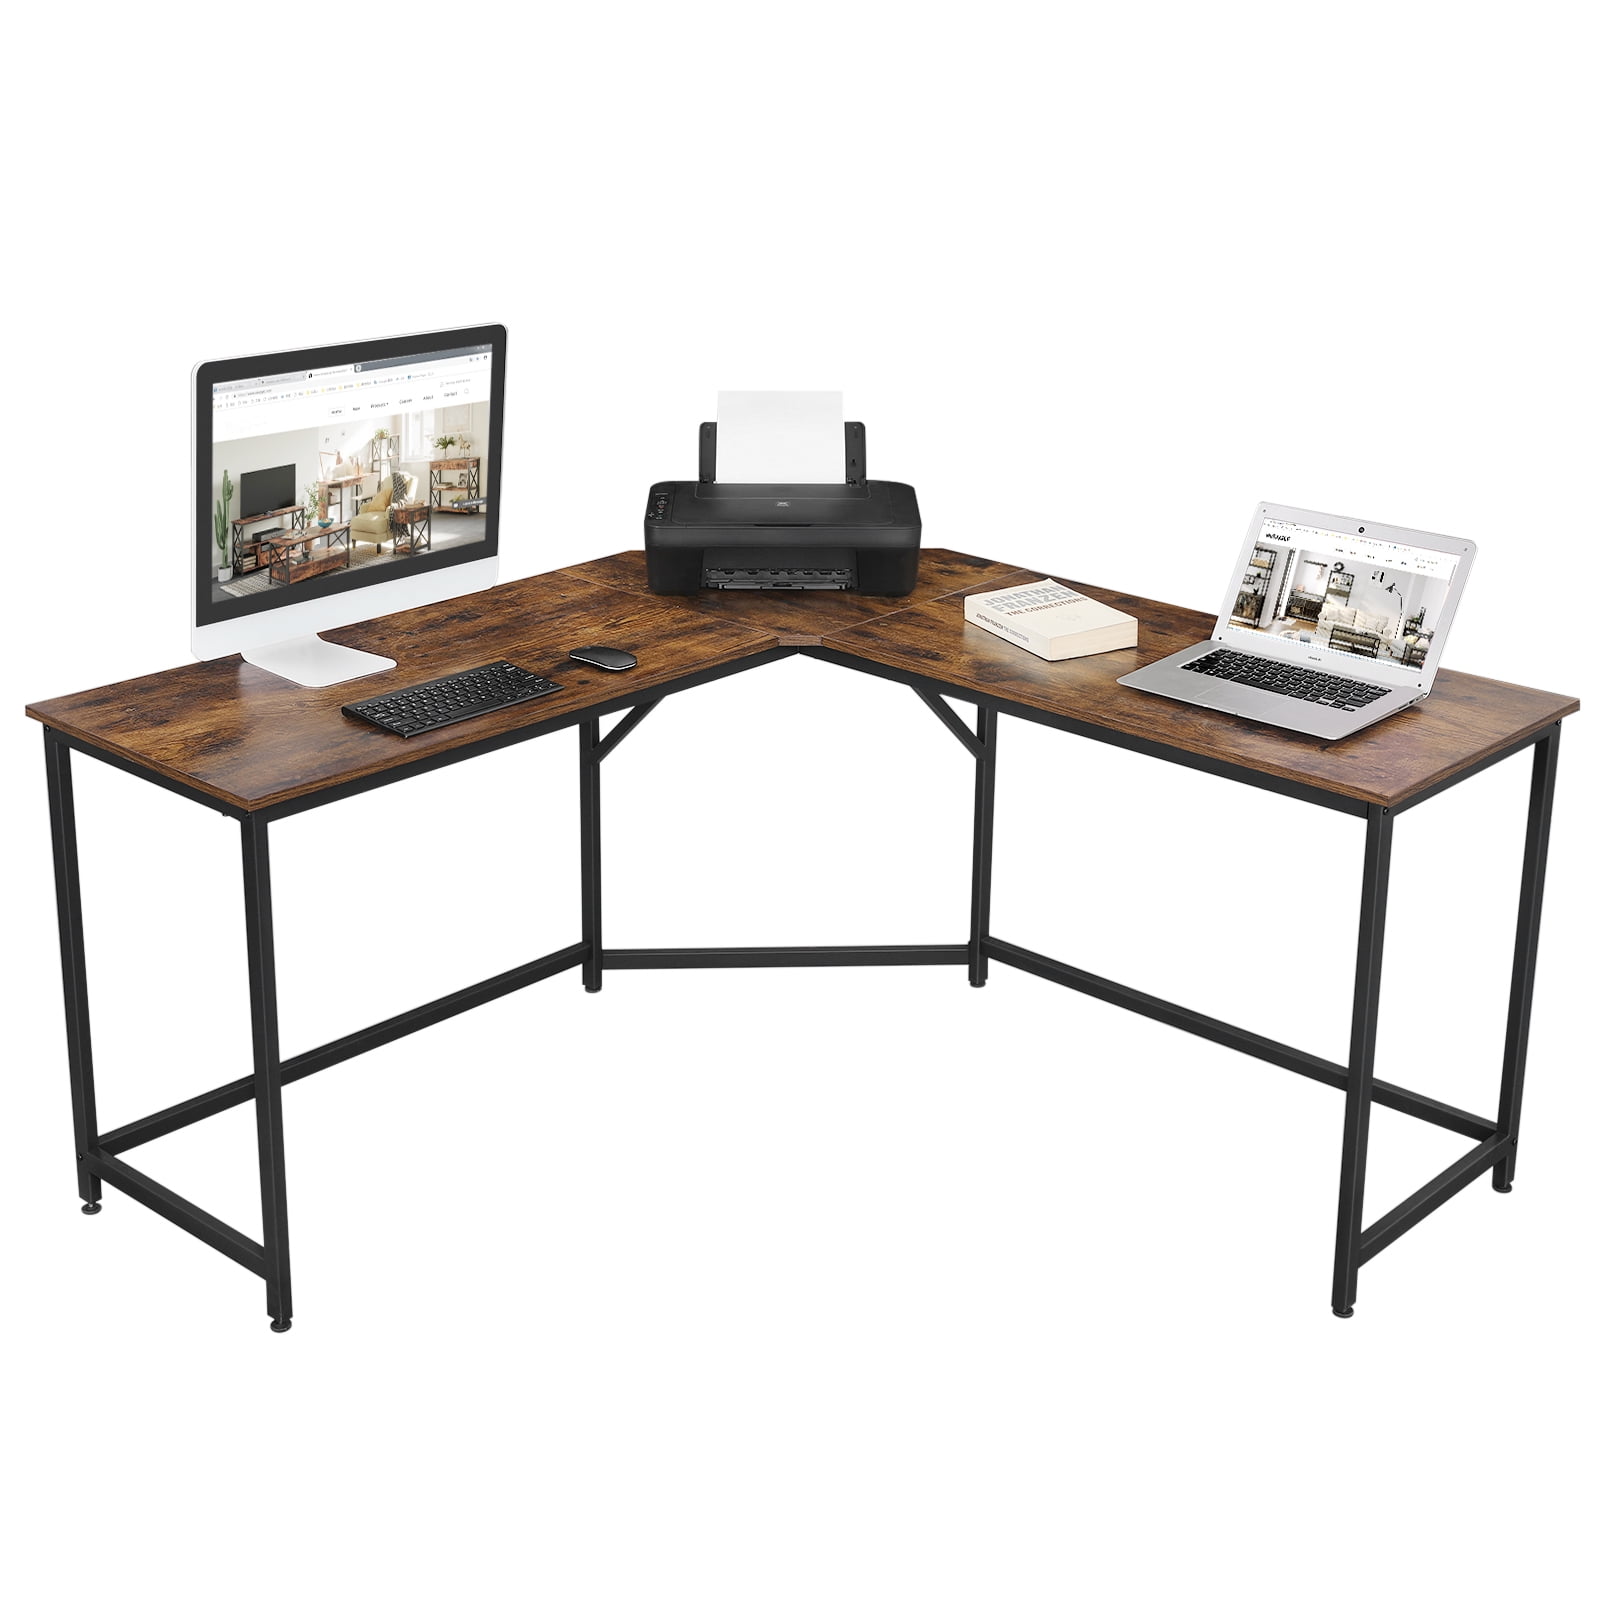 Black VASAGLE ALINRU Computer Desk L-Shaped Corner Desk with Monitor Stand, 